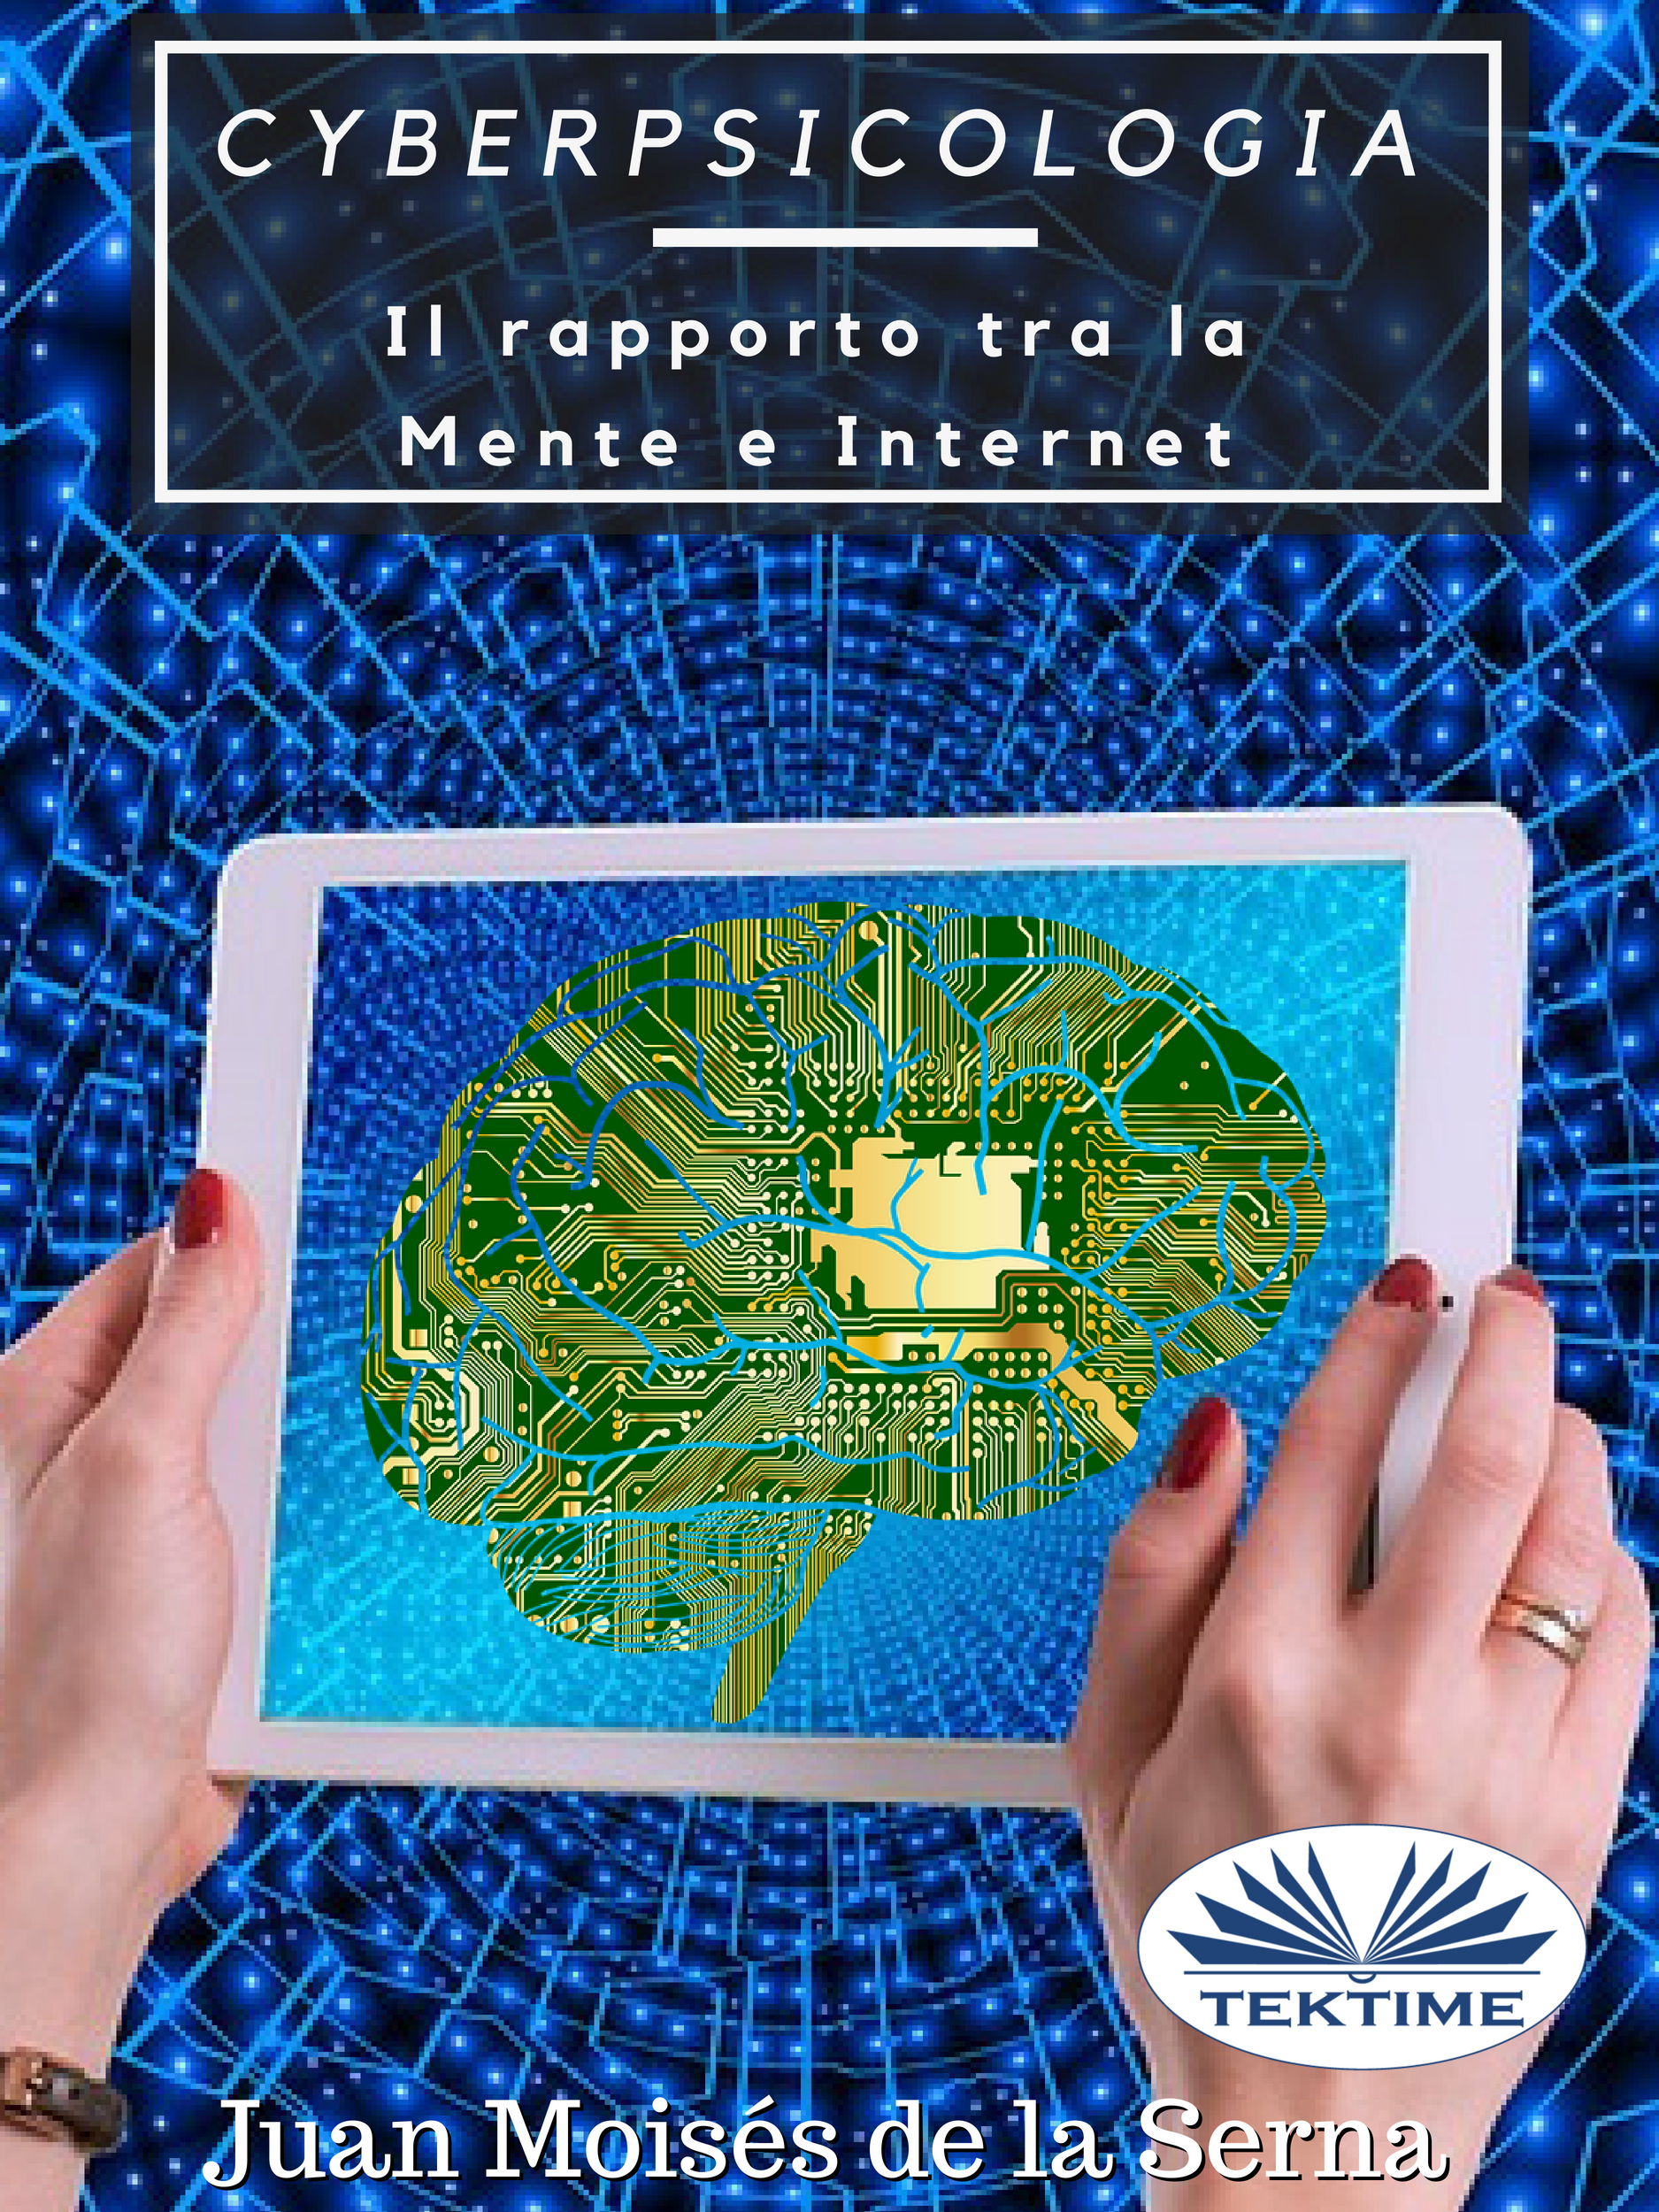 Книга  Cyberpsicologia созданная Dr. Juan Moisés De La Serna, Simona Ingiaimo может относится к жанру зарубежная компьютерная литература, книги о компьютерах. Стоимость электронной книги Cyberpsicologia с идентификатором 40851117 составляет 281.18 руб.